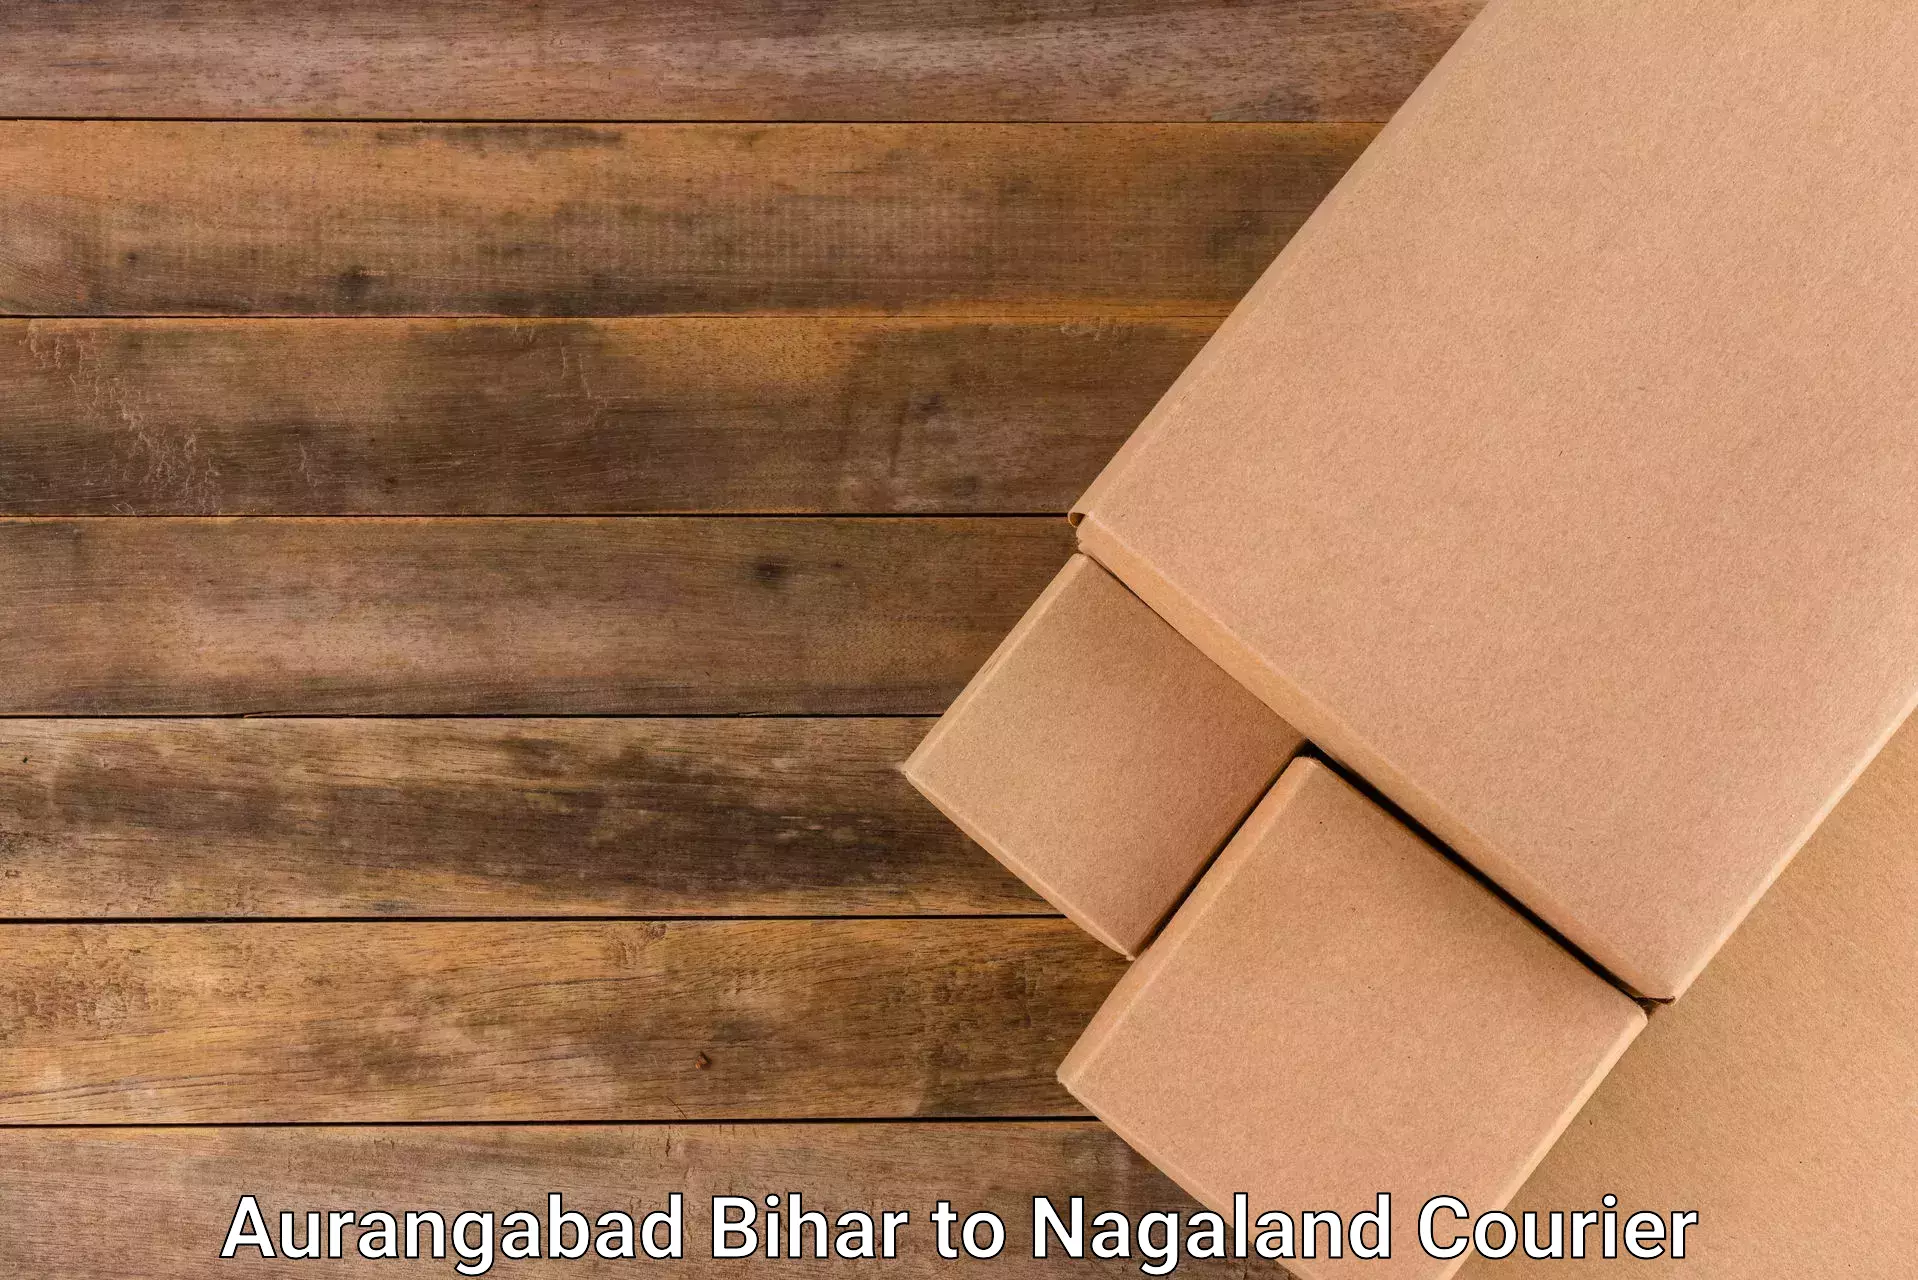 Weekend courier service Aurangabad Bihar to Phek